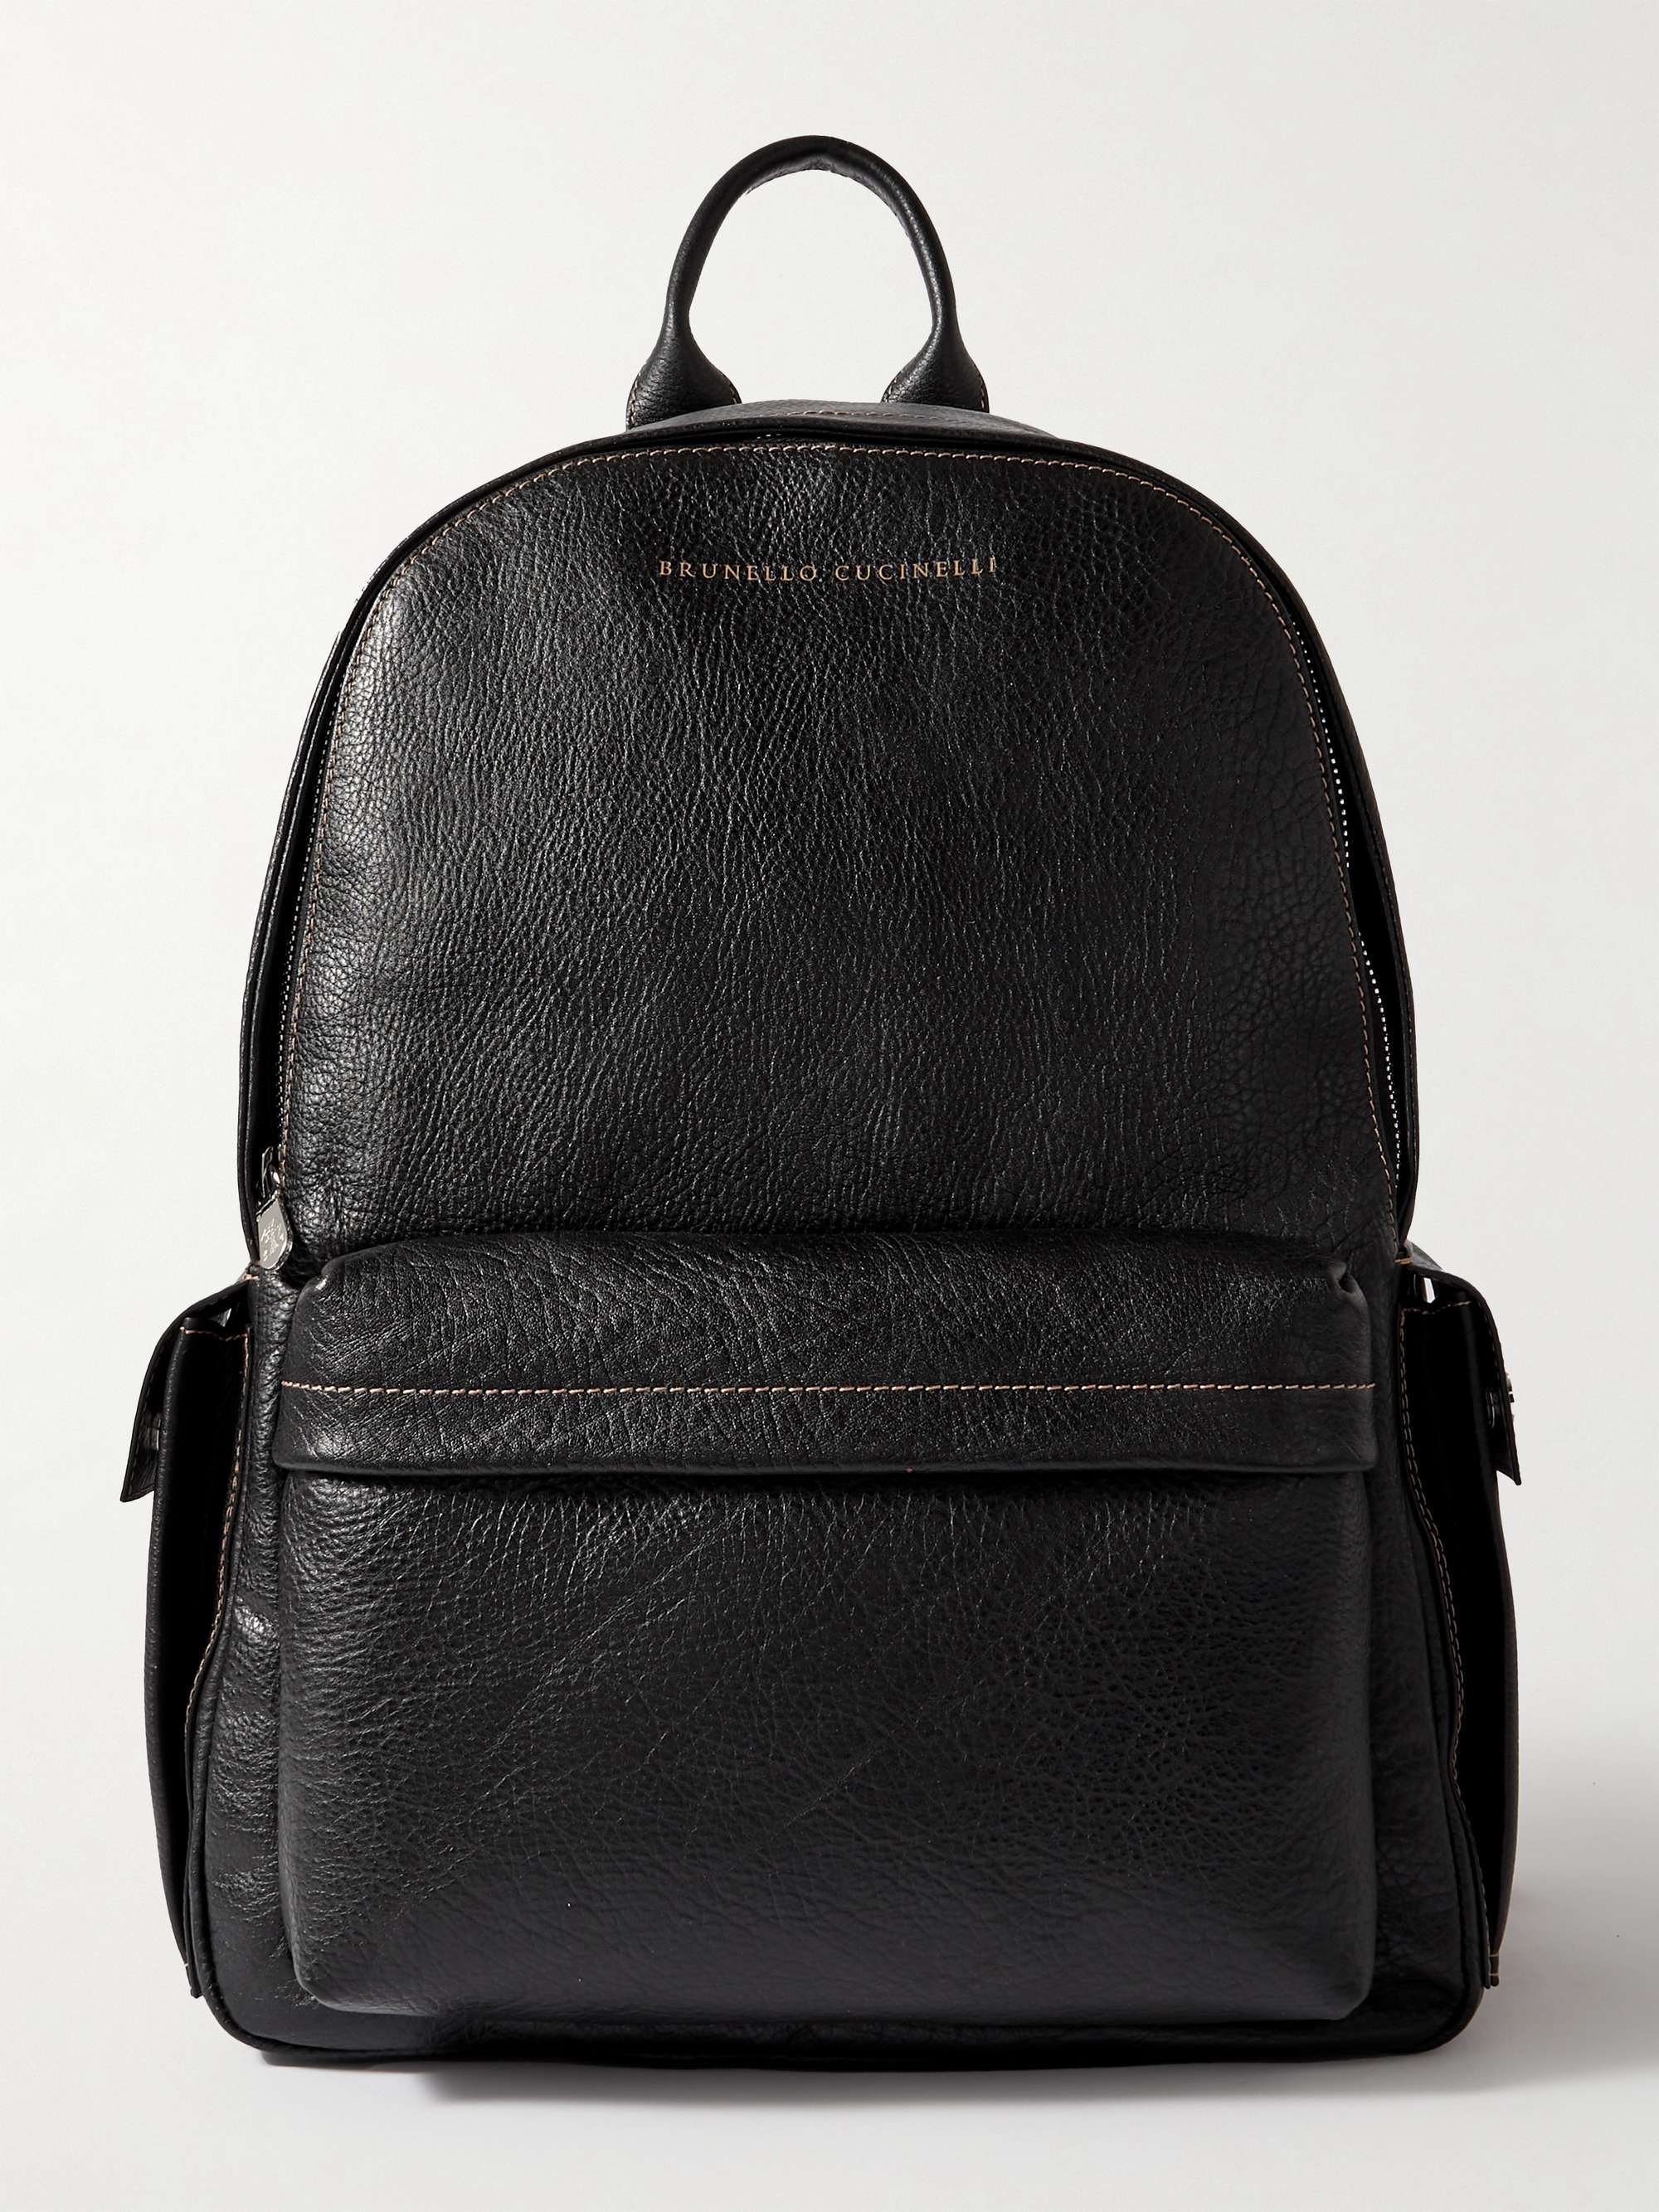 BRUNELLO CUCINELLI Full-Grain Leather Backpack for Men | MR PORTER